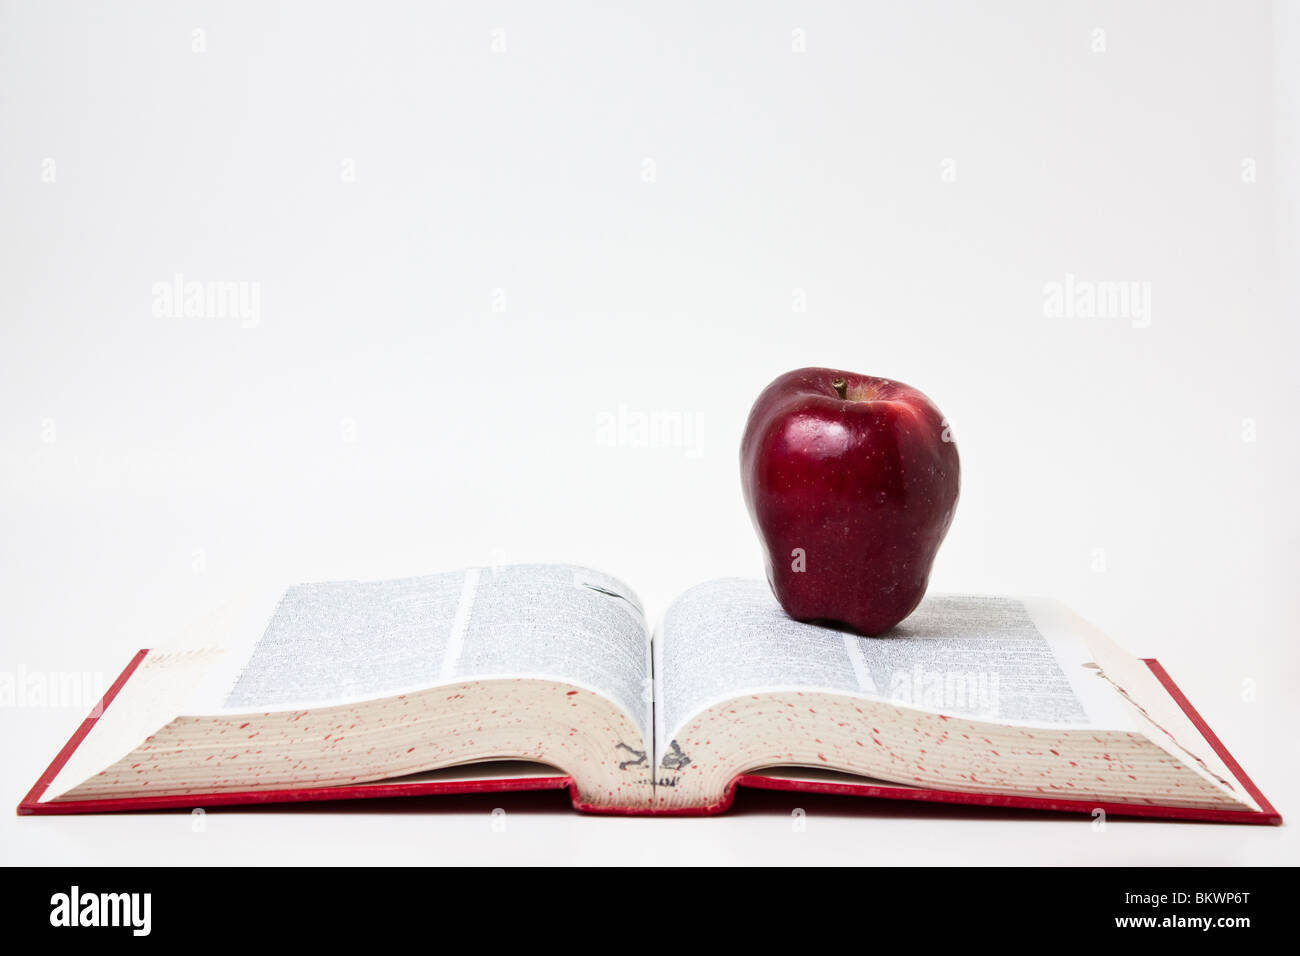 Livre ouvert propagation de l'éducation apprendre ABC apple Banque D'Images